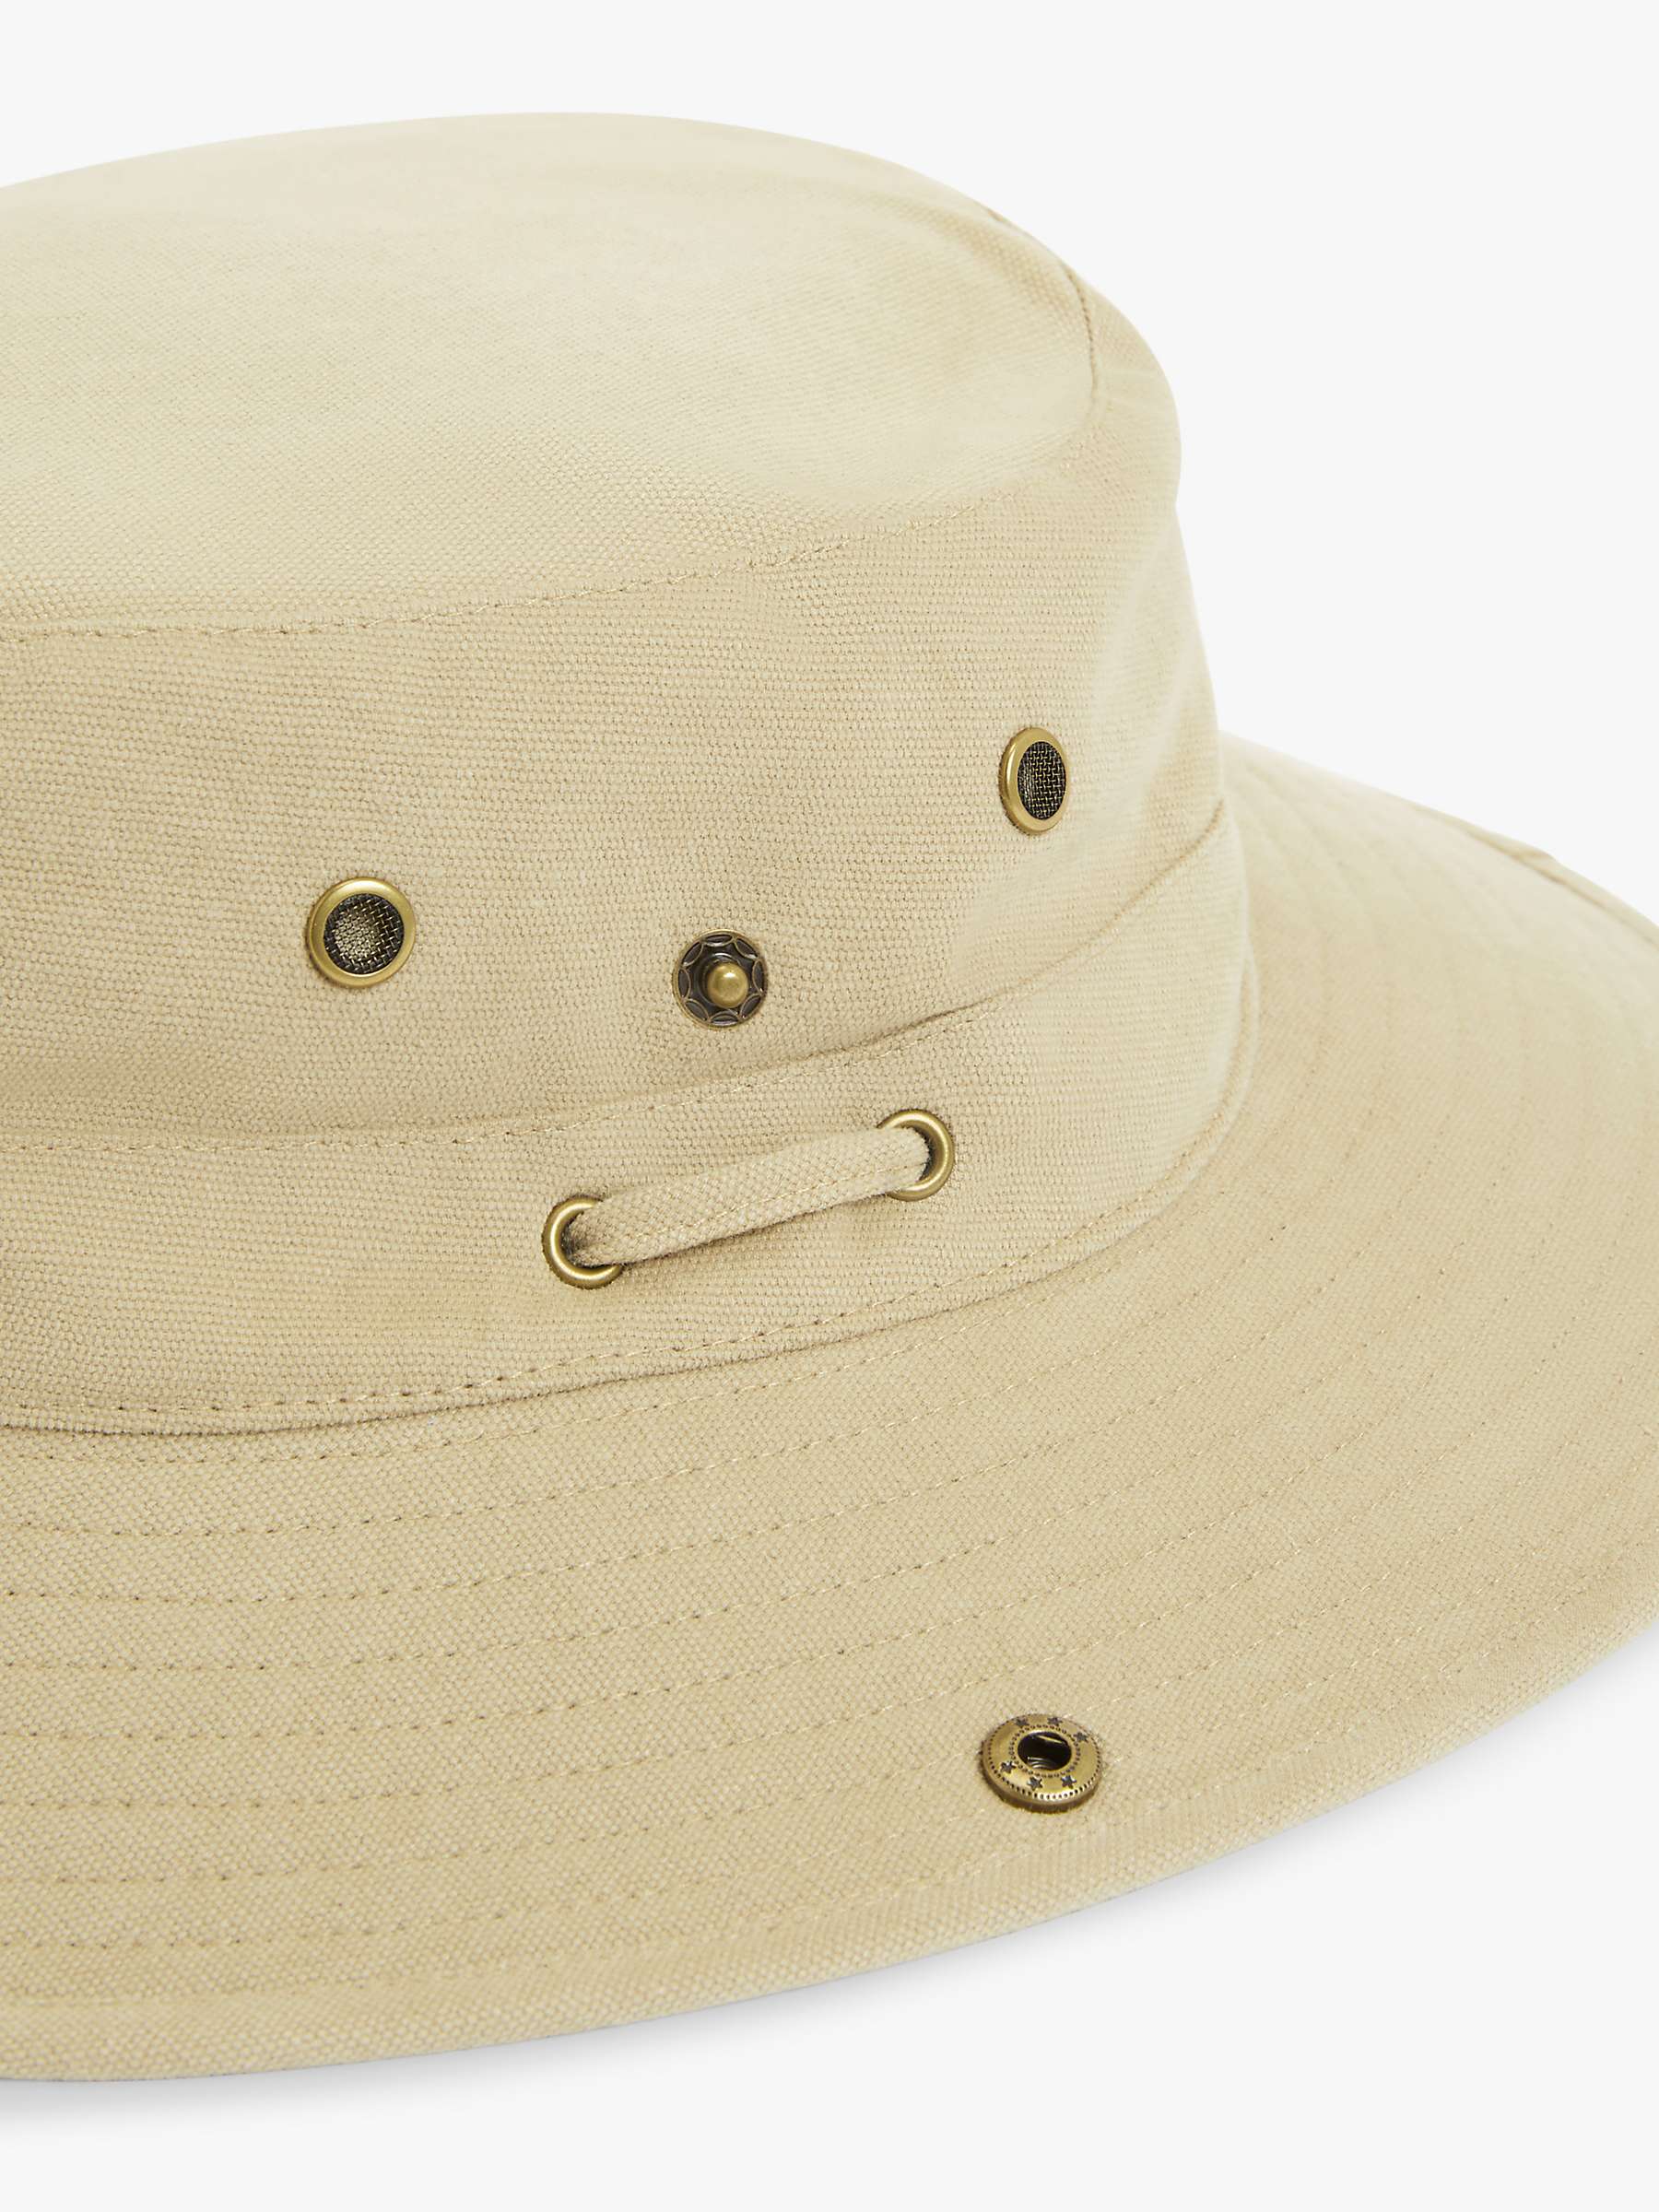 Buy John Lewis Cotton Safari Hat Online at johnlewis.com